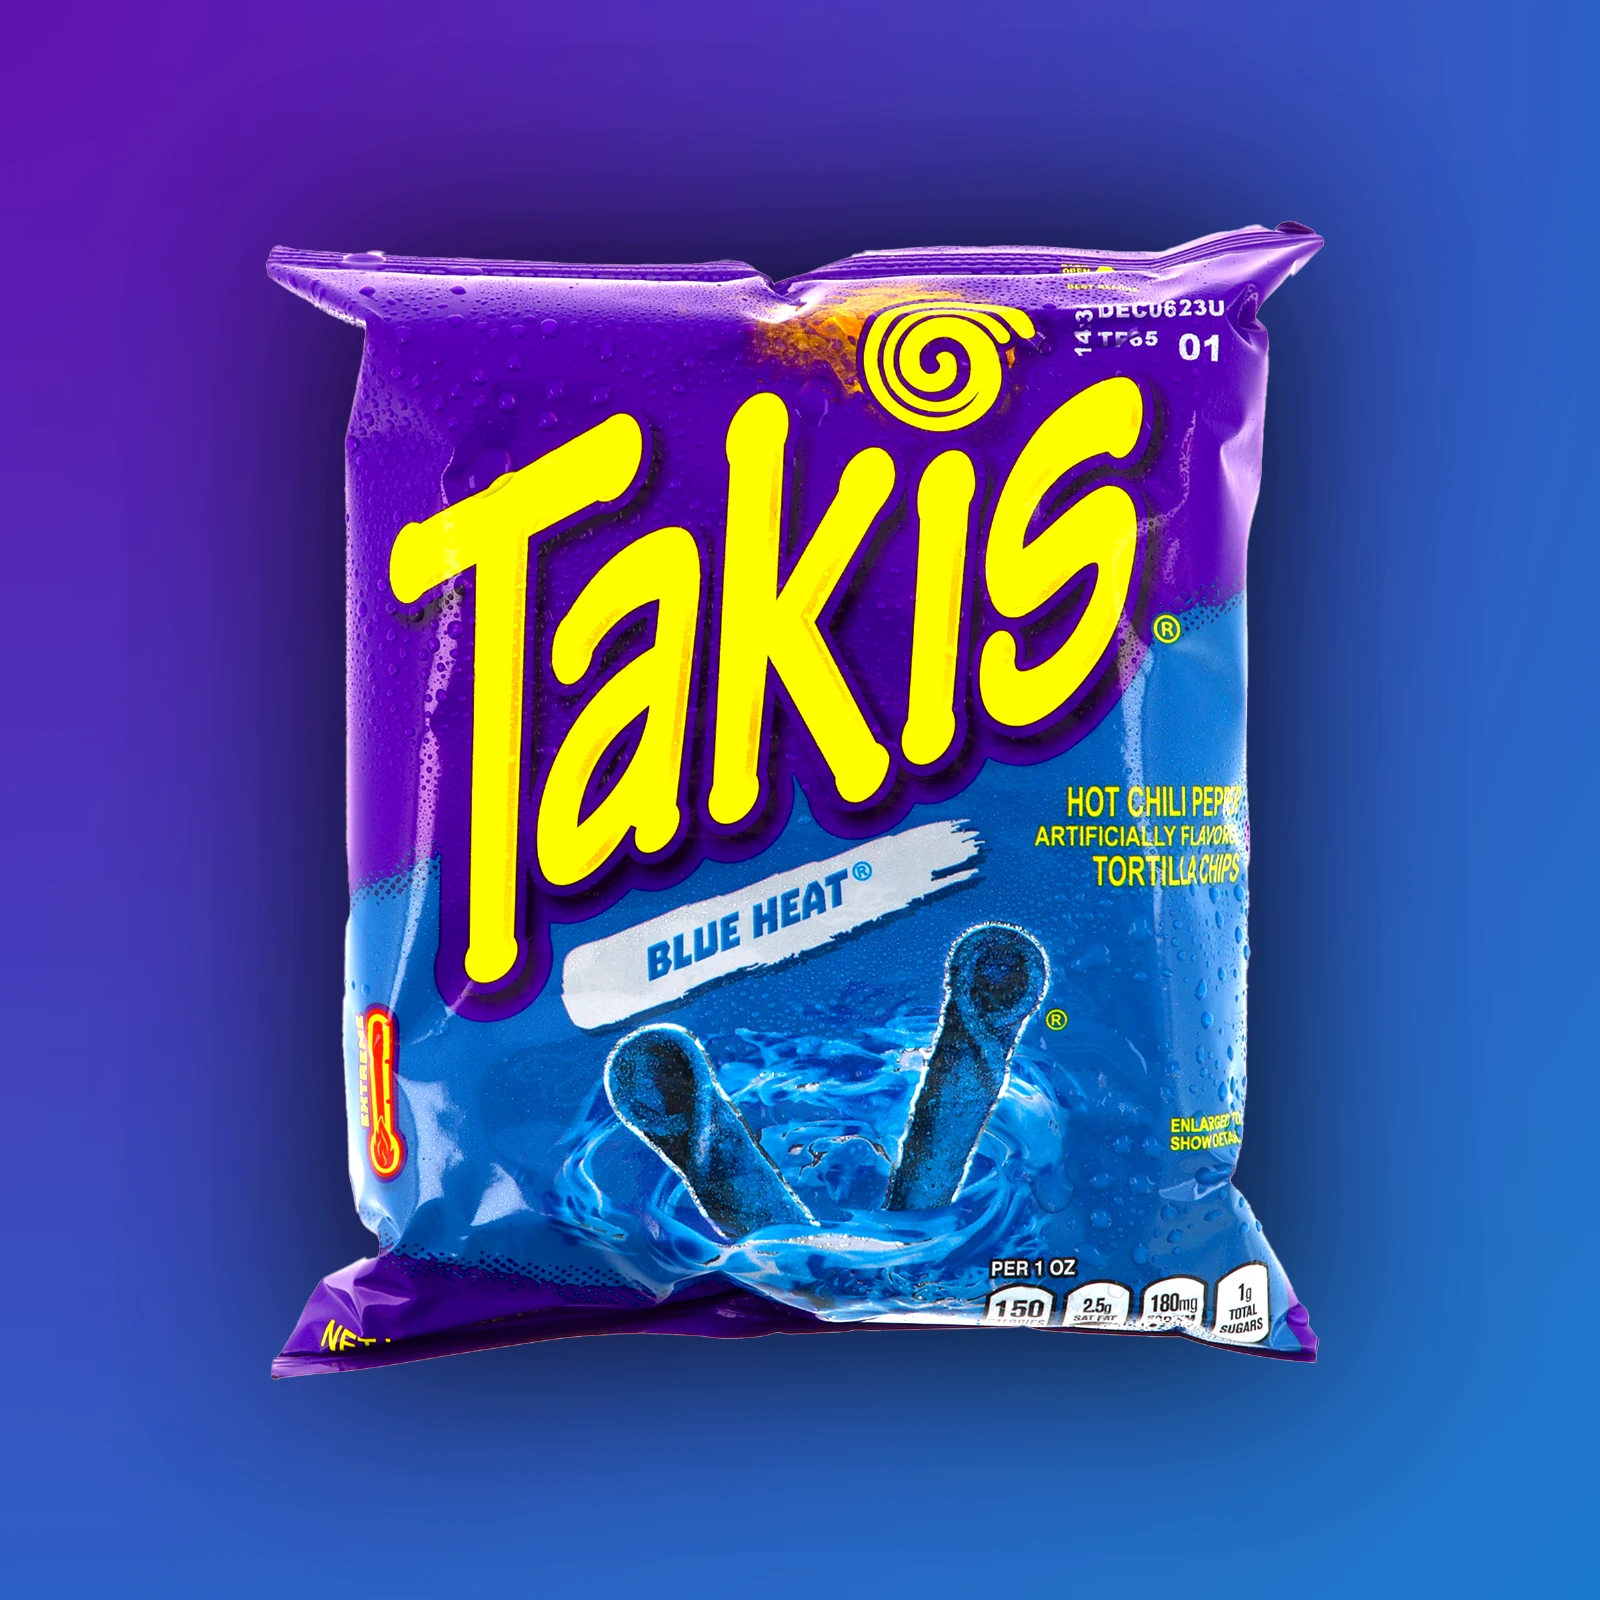 Takis - Blue Heat - 92,3 g | Chili & Lime - Special Edition Tortilla Chips günstig online kaufen - Hookain Snack-Onlineshop3